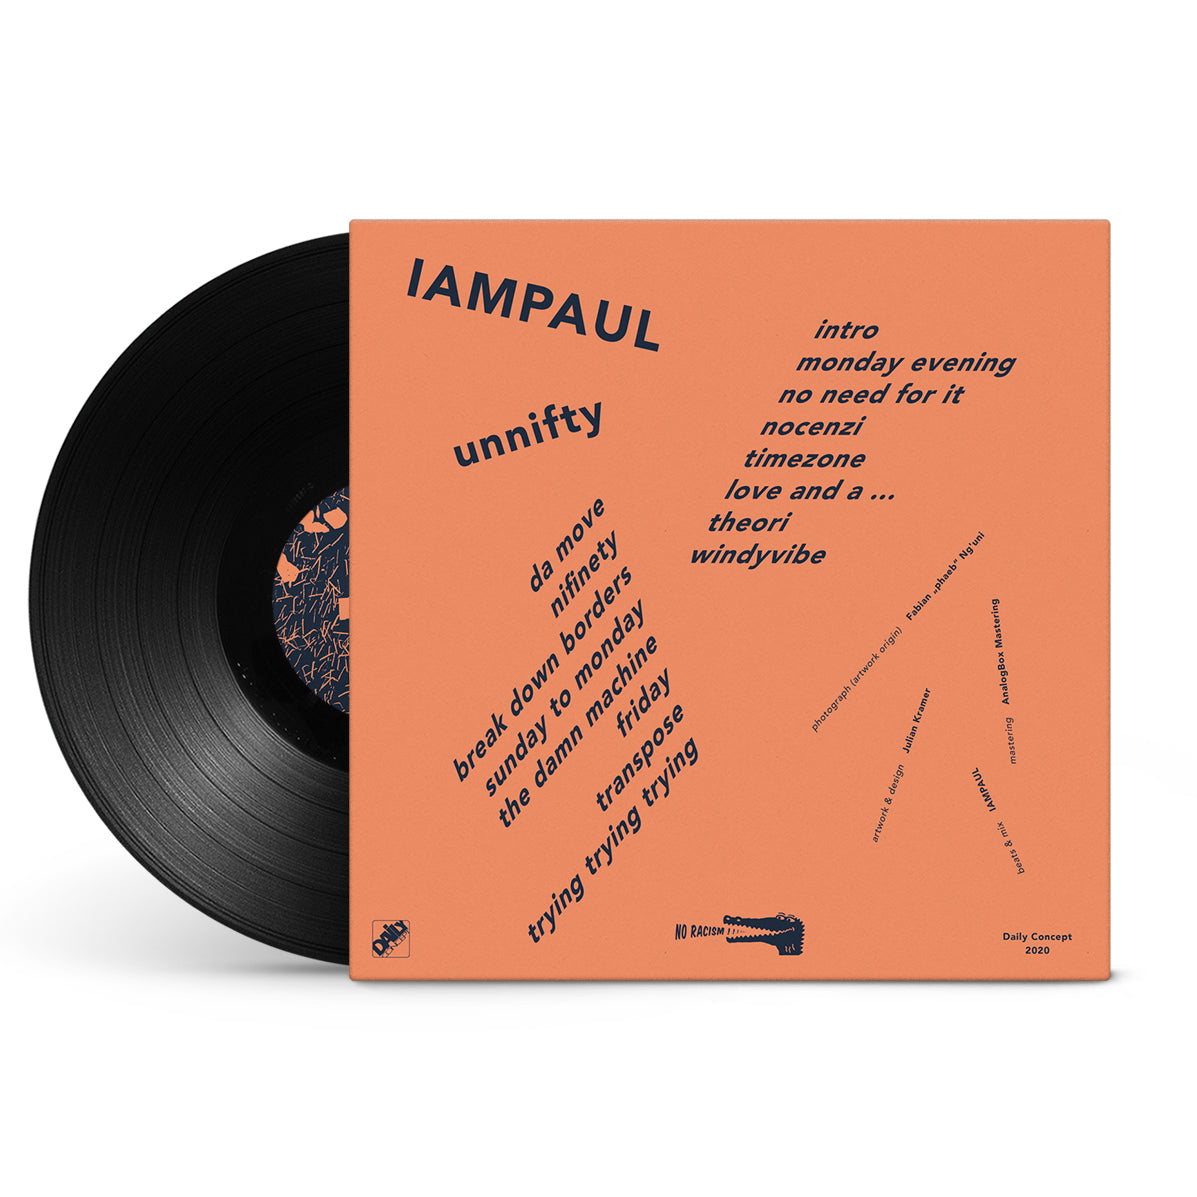 IAMPAUL - Unnifty [Vinyl]